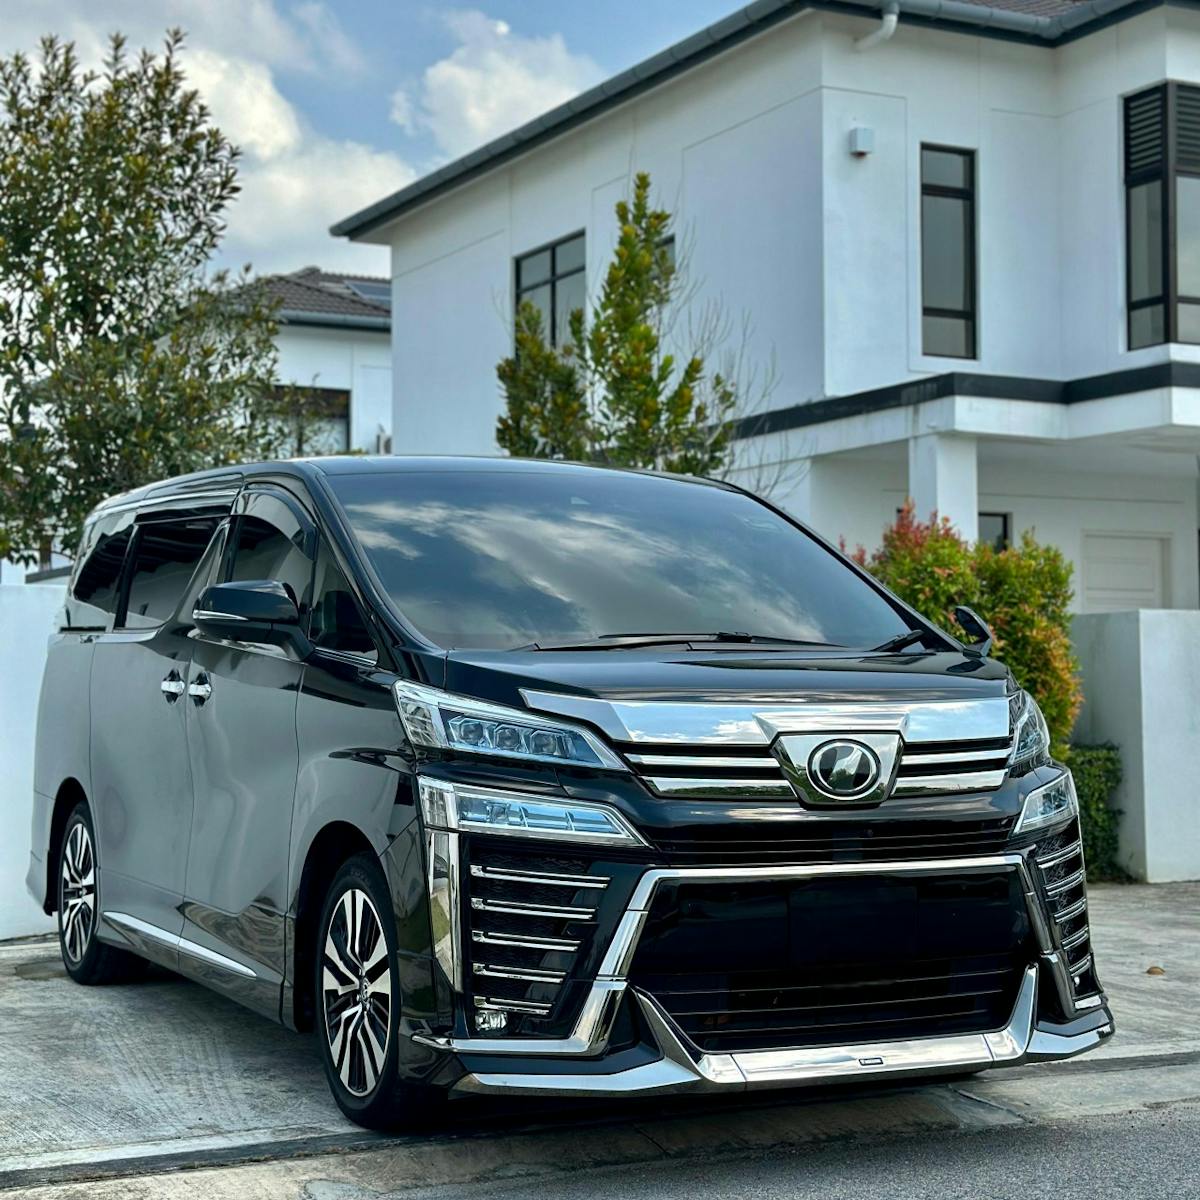 Toyota Vellfire ZG 2019